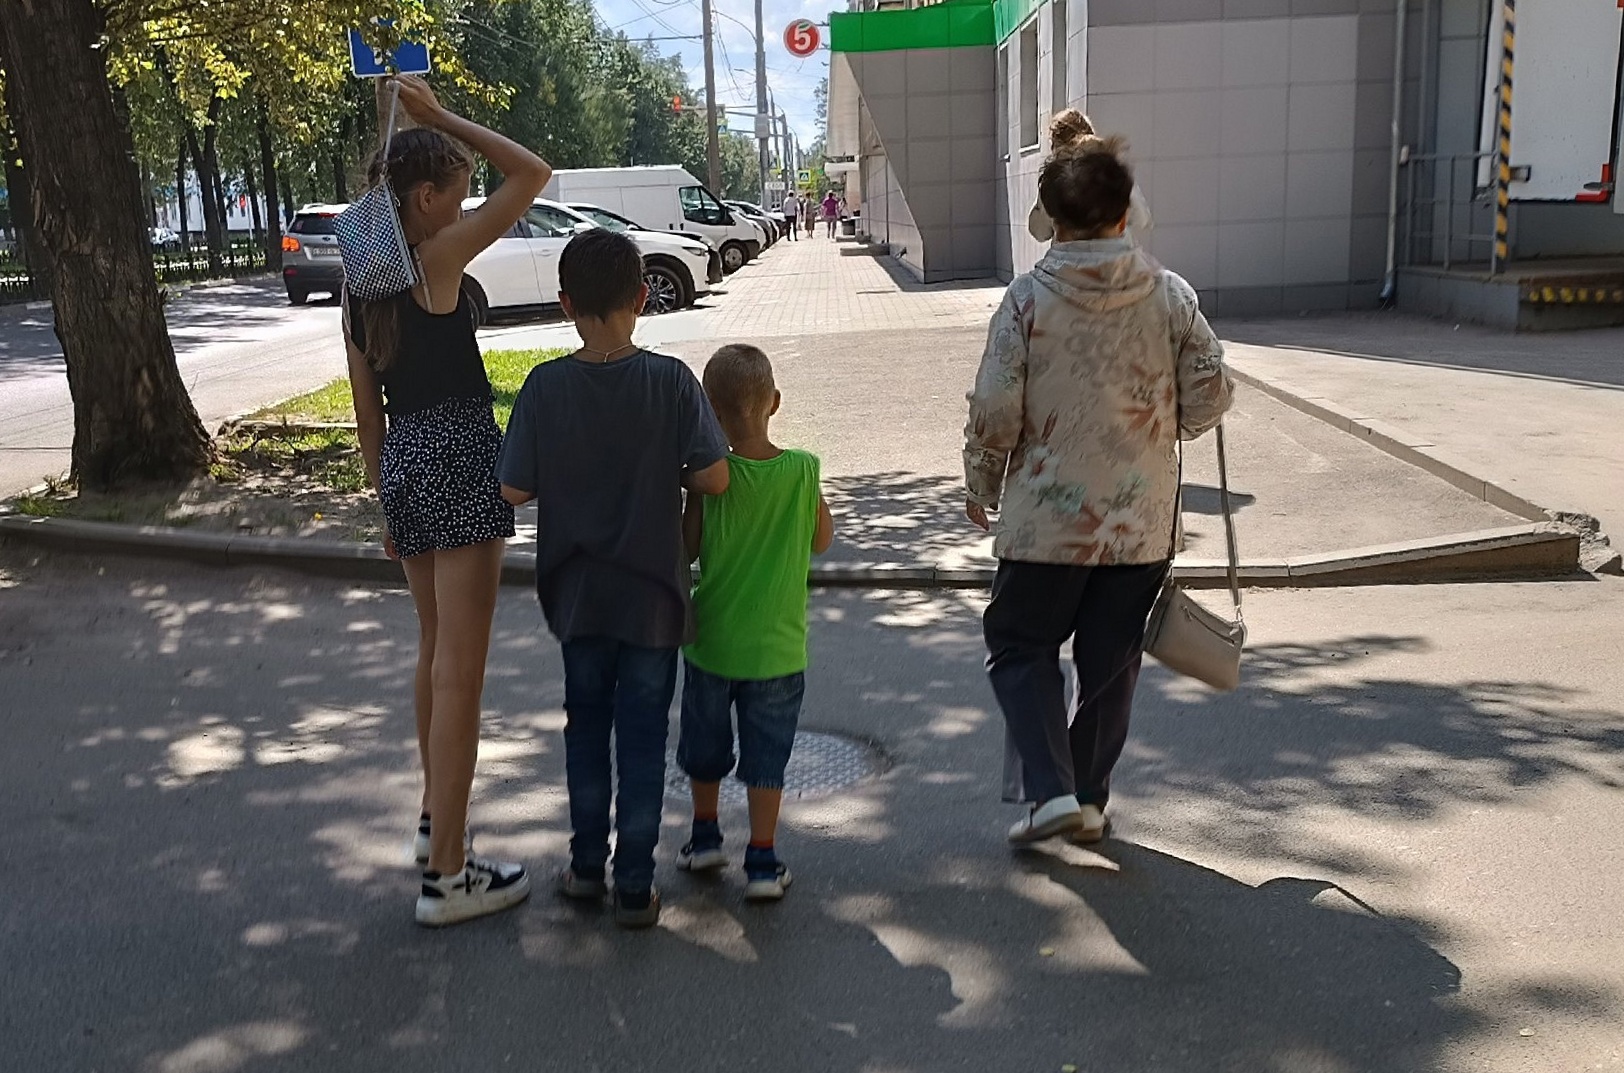 Десять тысяч рублей к школе с барского плеча: новая выплата обрадовала сотни семей с детьми